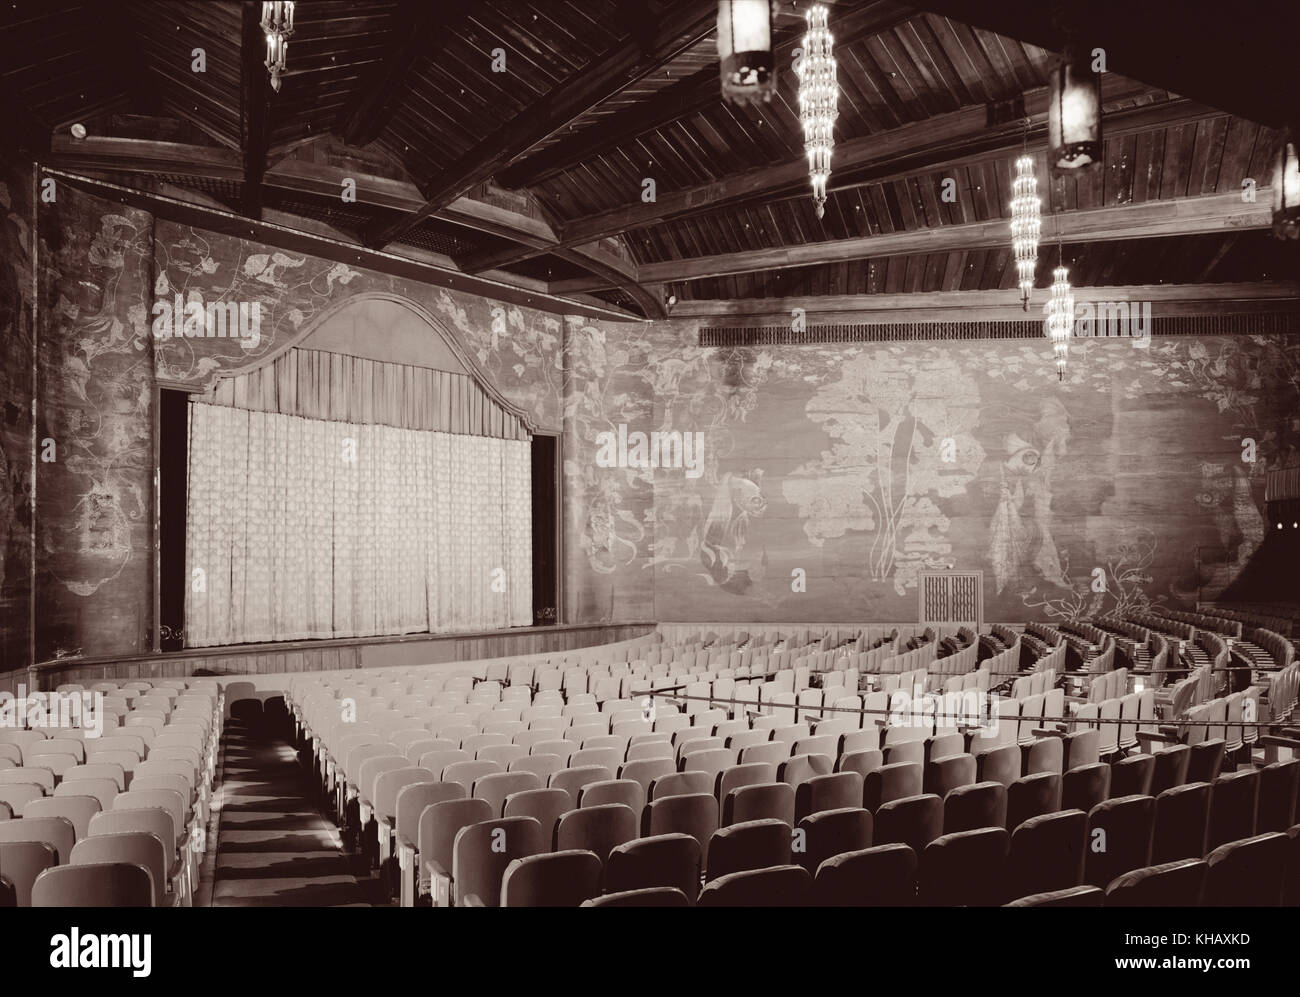 Vista interna del Paramount Theatre di Palm Beach, Florida. Il film storico palazzo è stato costruito nel 1926 e progettato in stile moresco e revival coloniale spagnolo in stile Revival da Joseph Urban come silent movie theatre appena prima dell'avvento di 'talkie". (Foto c1972) Foto Stock